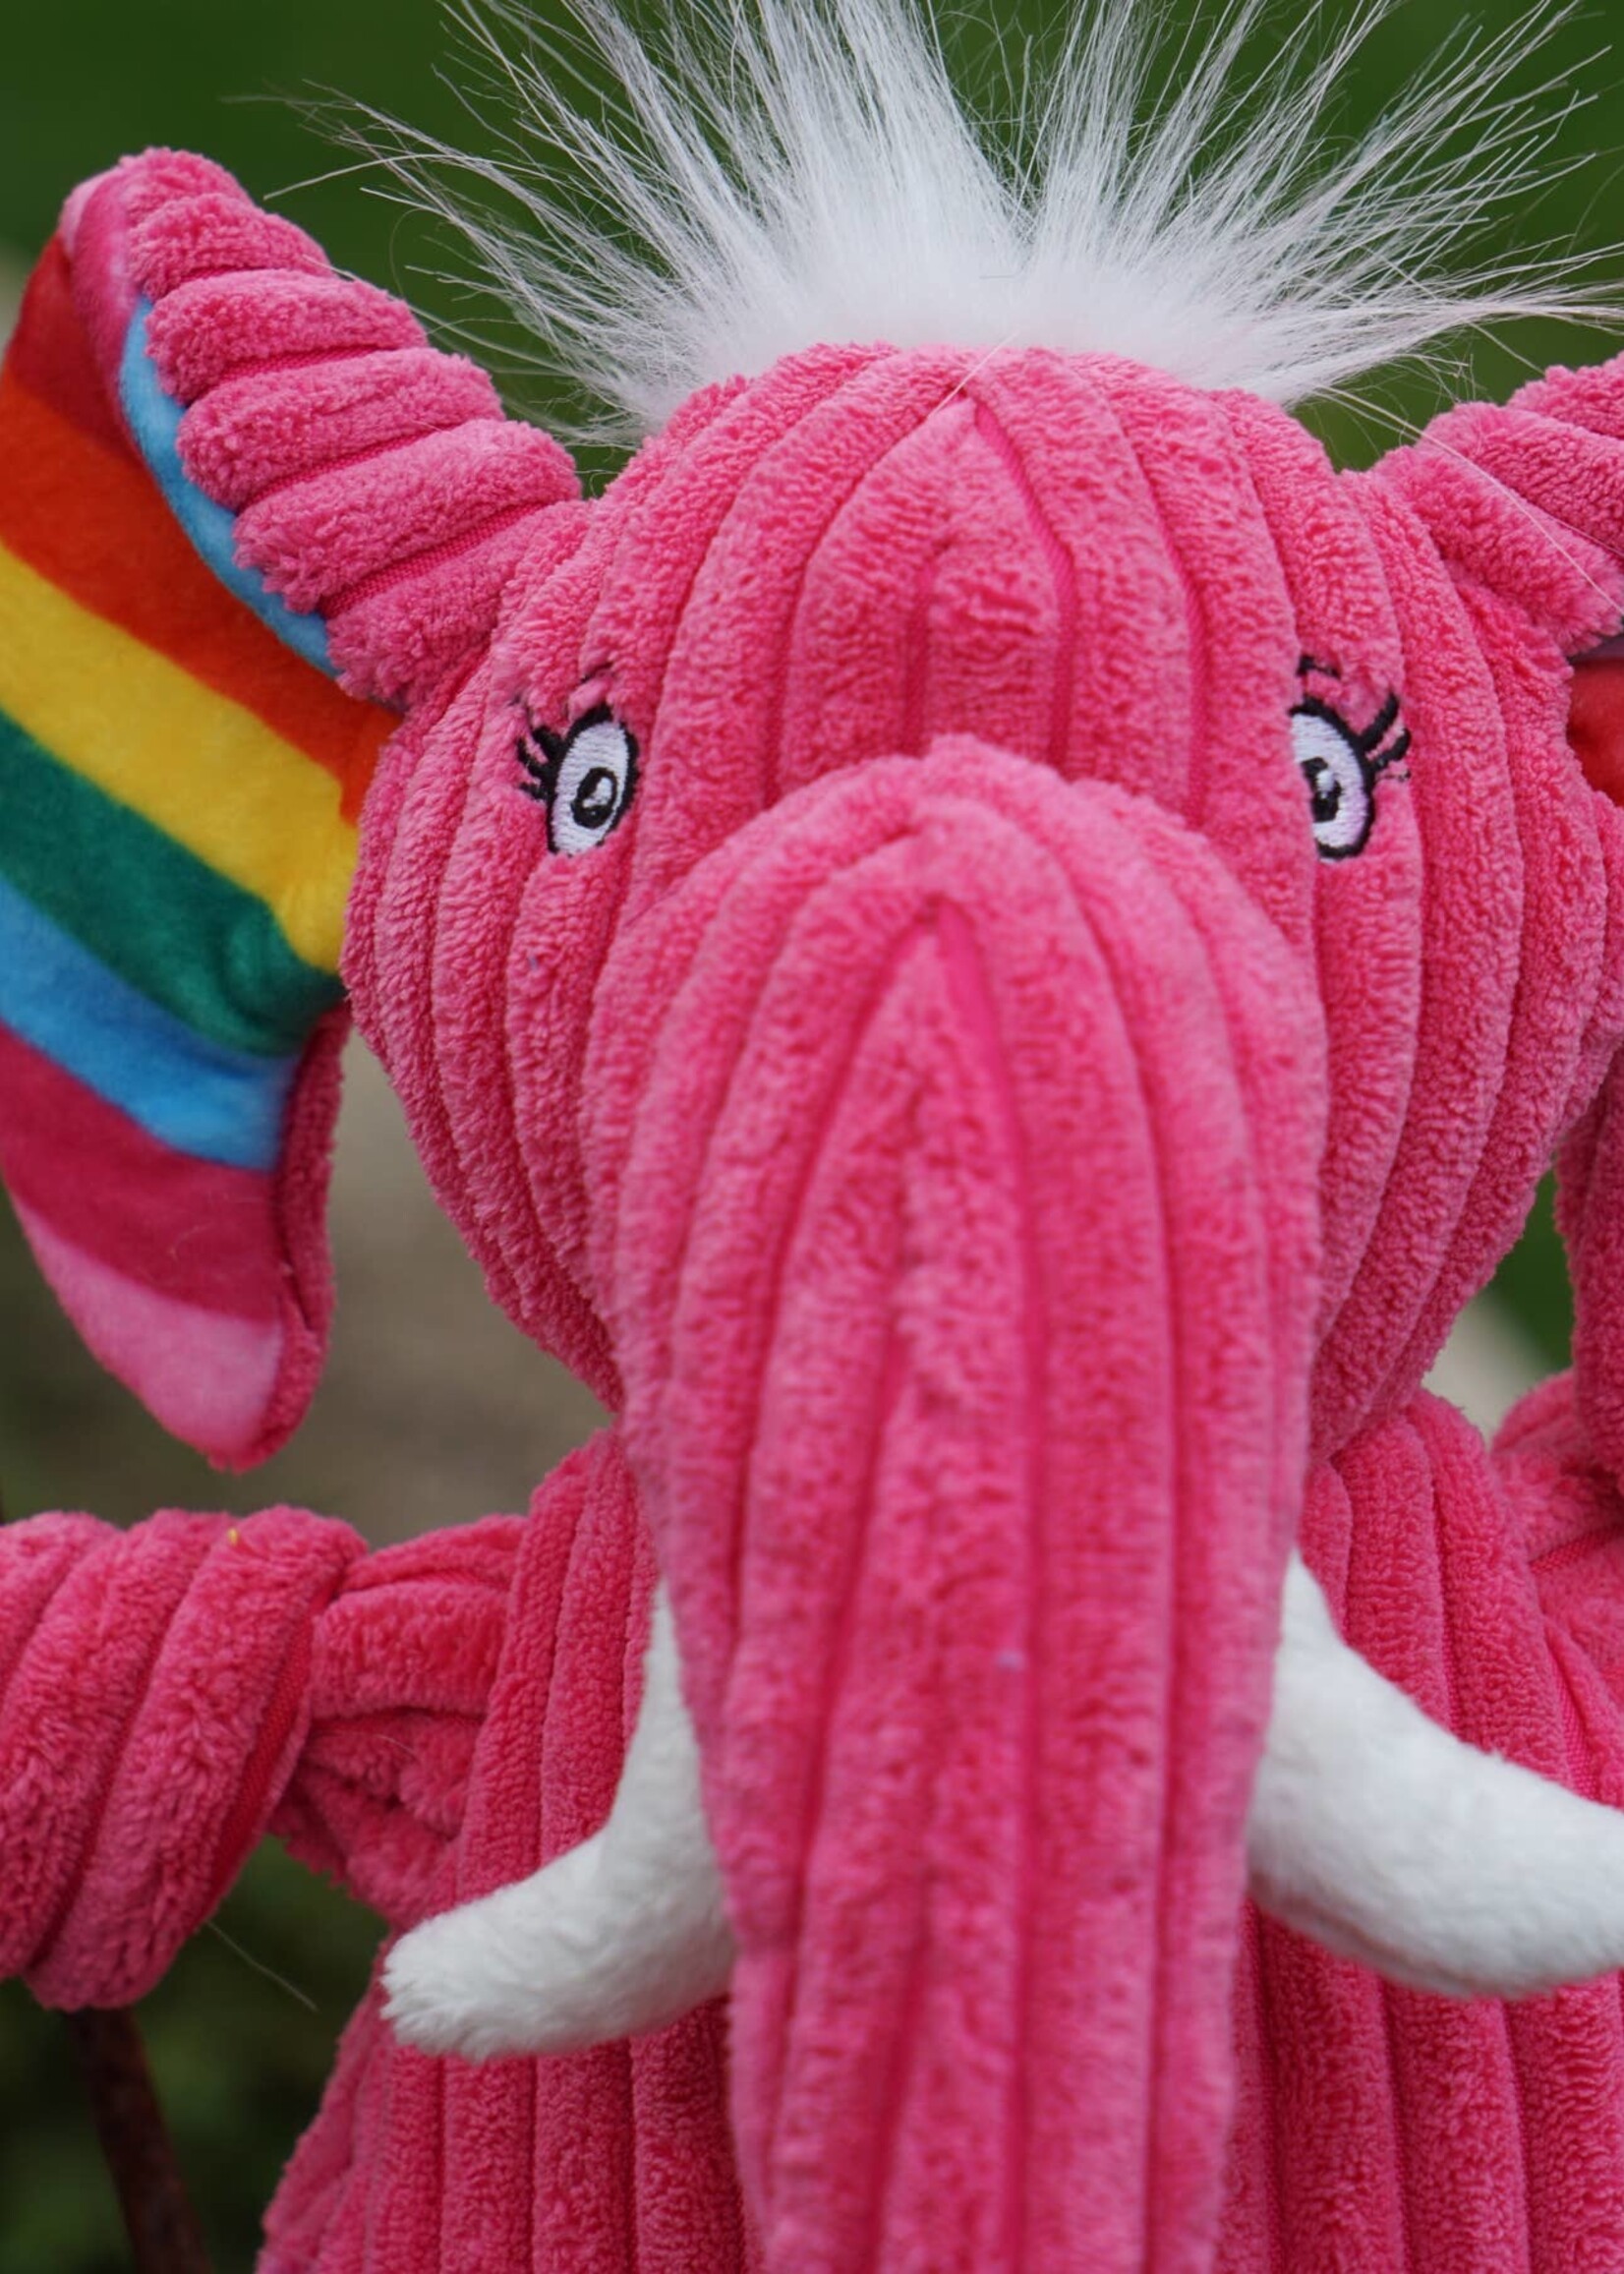 HuggleHounds HuggleHounds Rainbow Elephant Knottie Plush Dog Toy